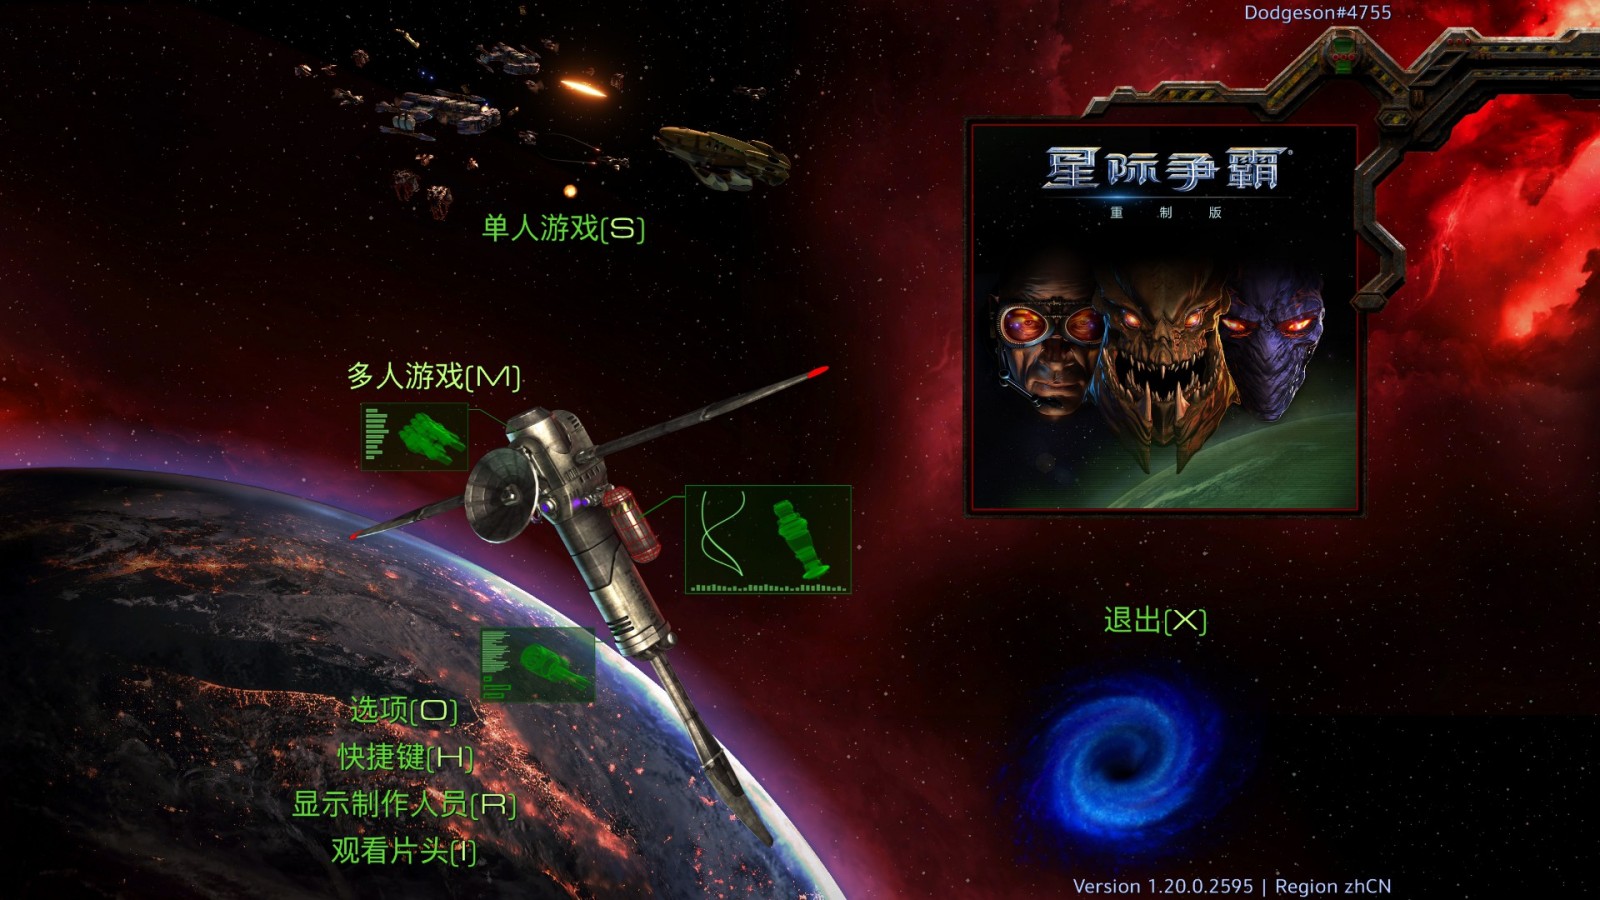 暴雪星际争霸重制版上线外服战网含简体中文国语配音